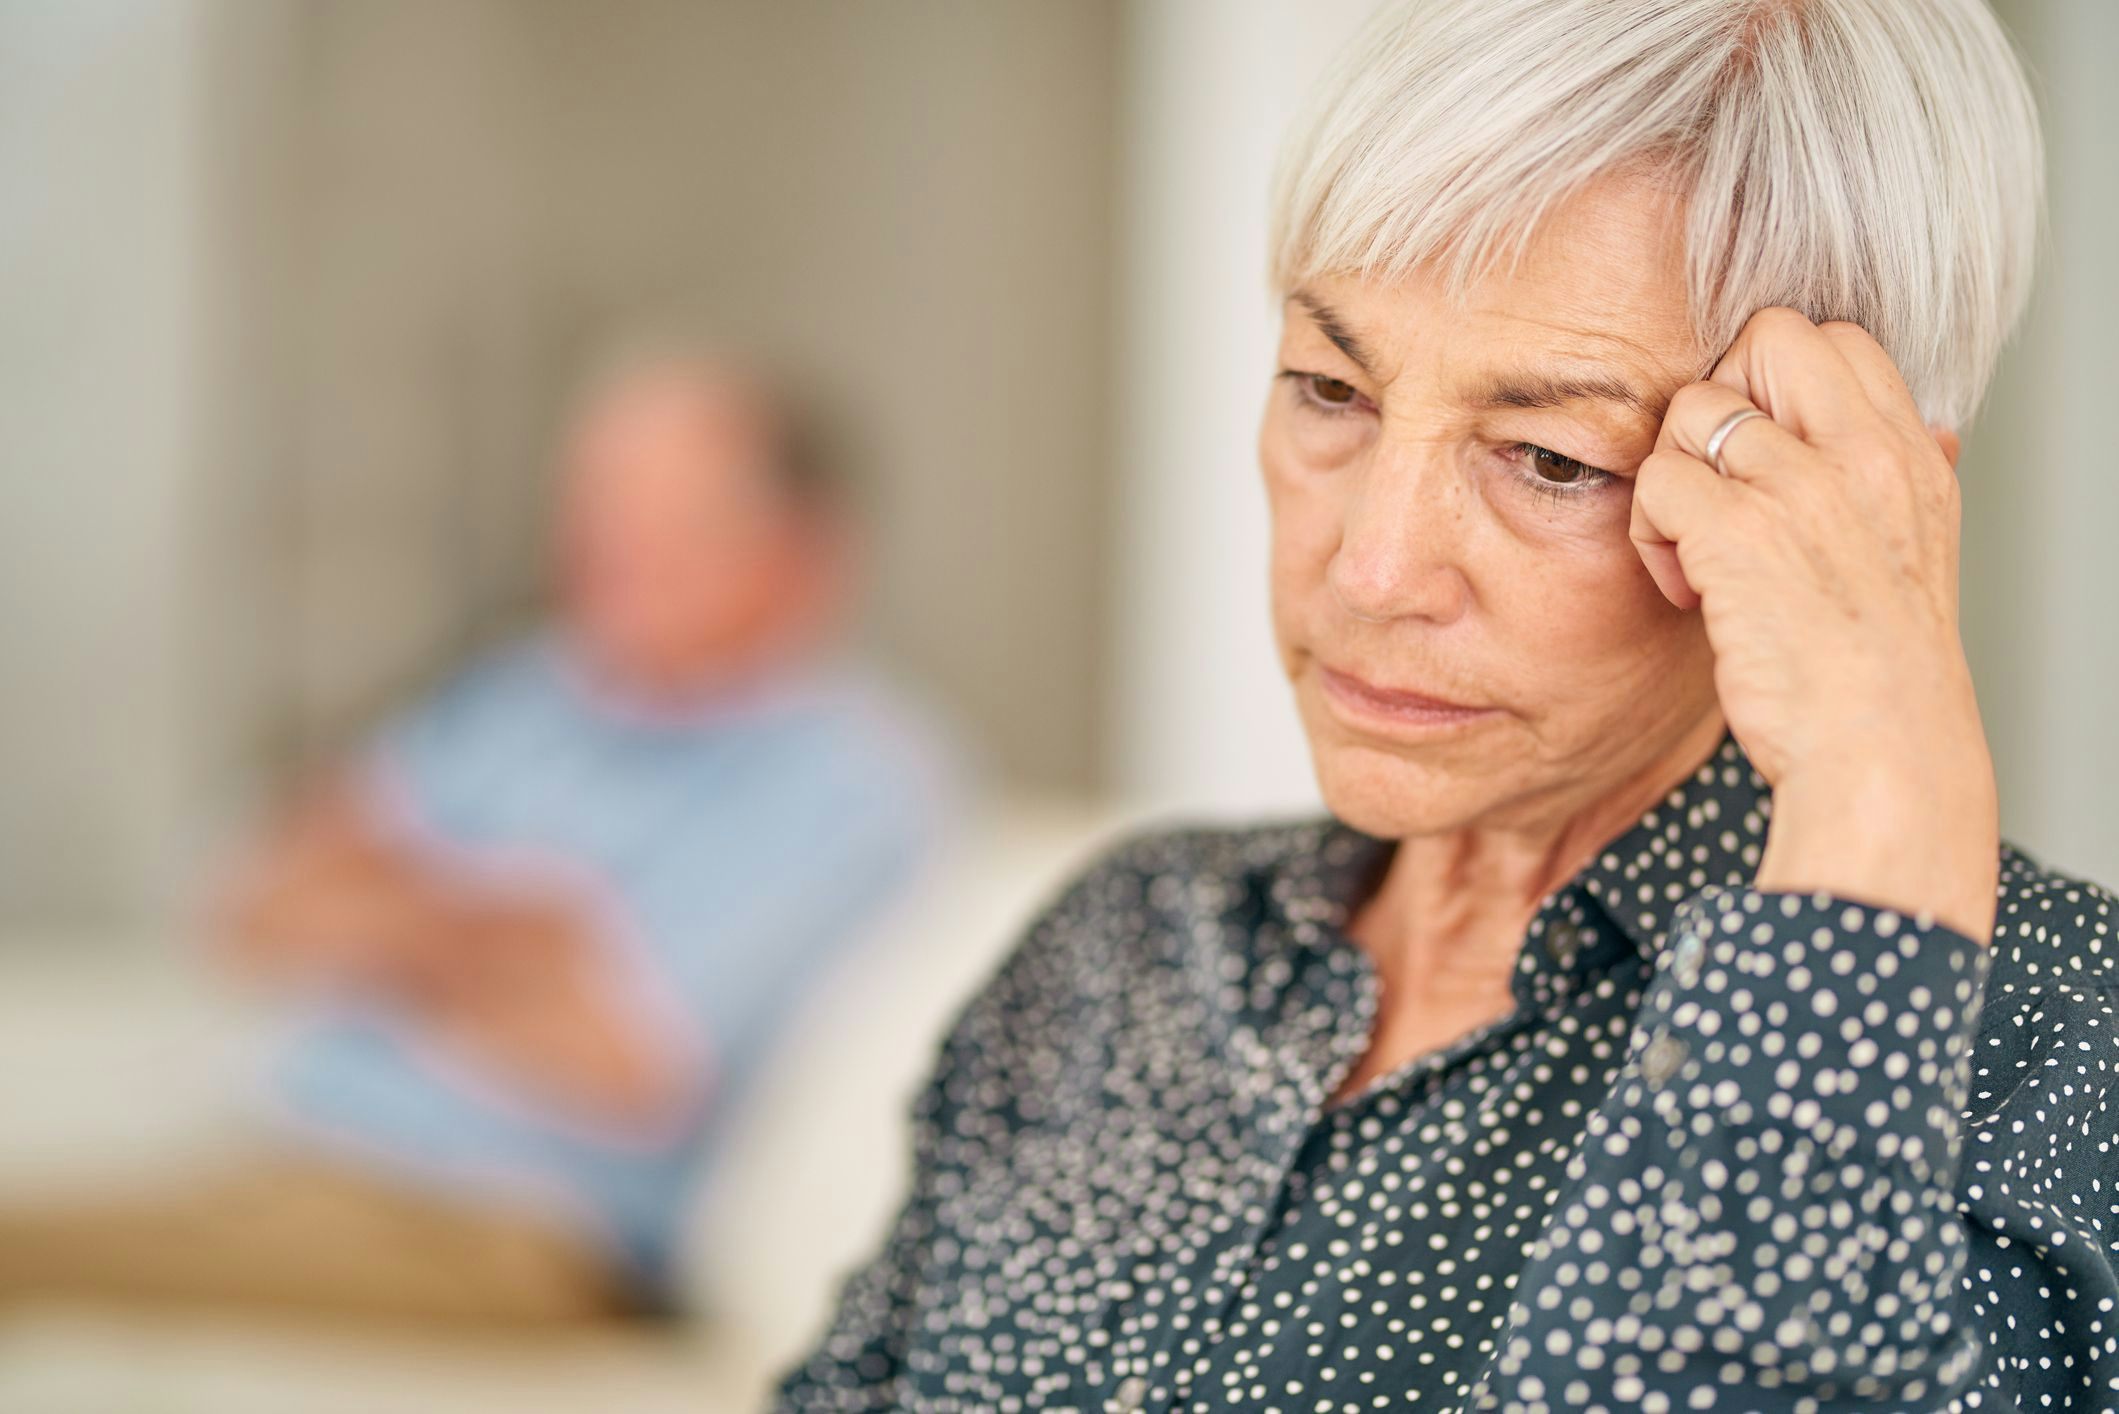 Folgen der Corona-Pandemie: häufigere Depressionen bei Senioren – was man tun kann